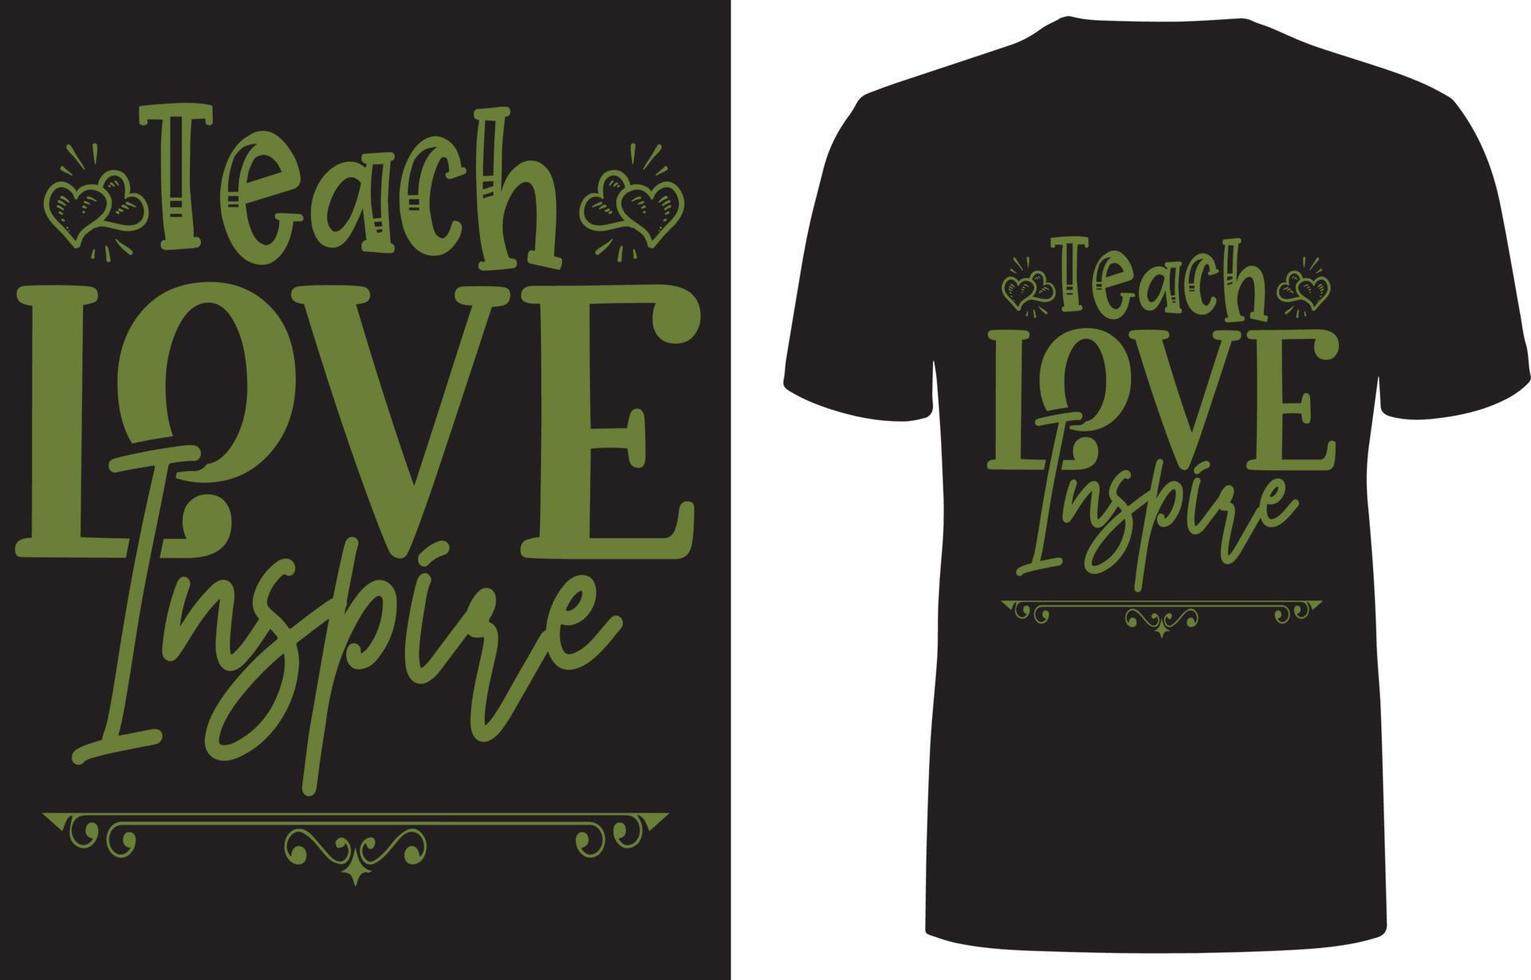 kreatives Typografie-T-Shirt für Lehrer oder Erzieher, Liebe lehren, inspirieren, Lehrer leben, pädagogischer Rockstar, cooles T-Shirt für Ihr Erzieher-freies T-Shirt-Design vektor